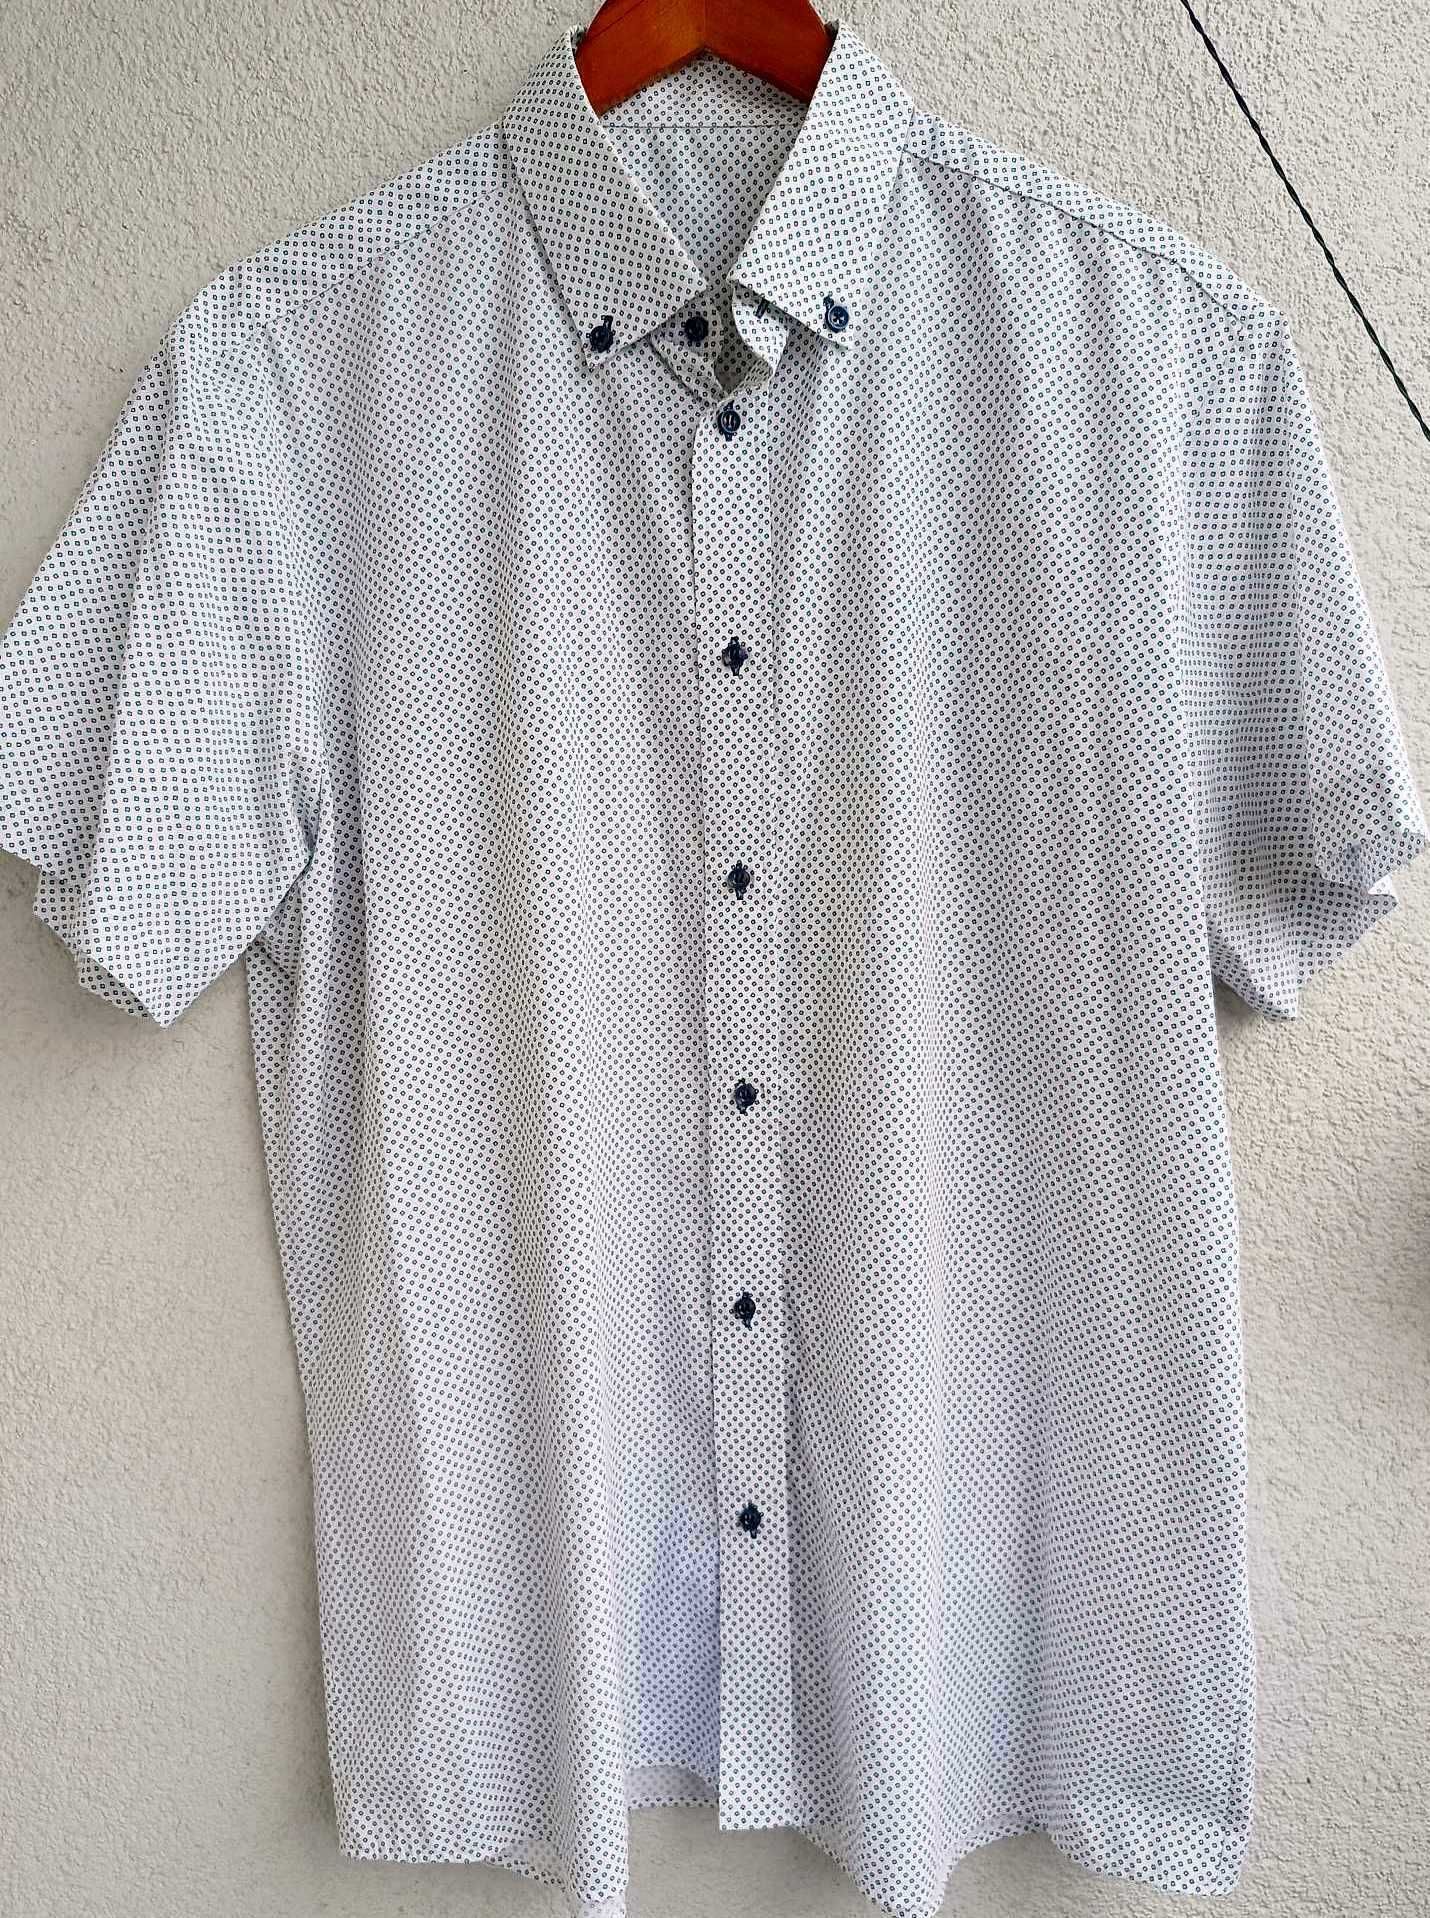 Męska koszula krótki rękaw biała wzorek XL 43/44